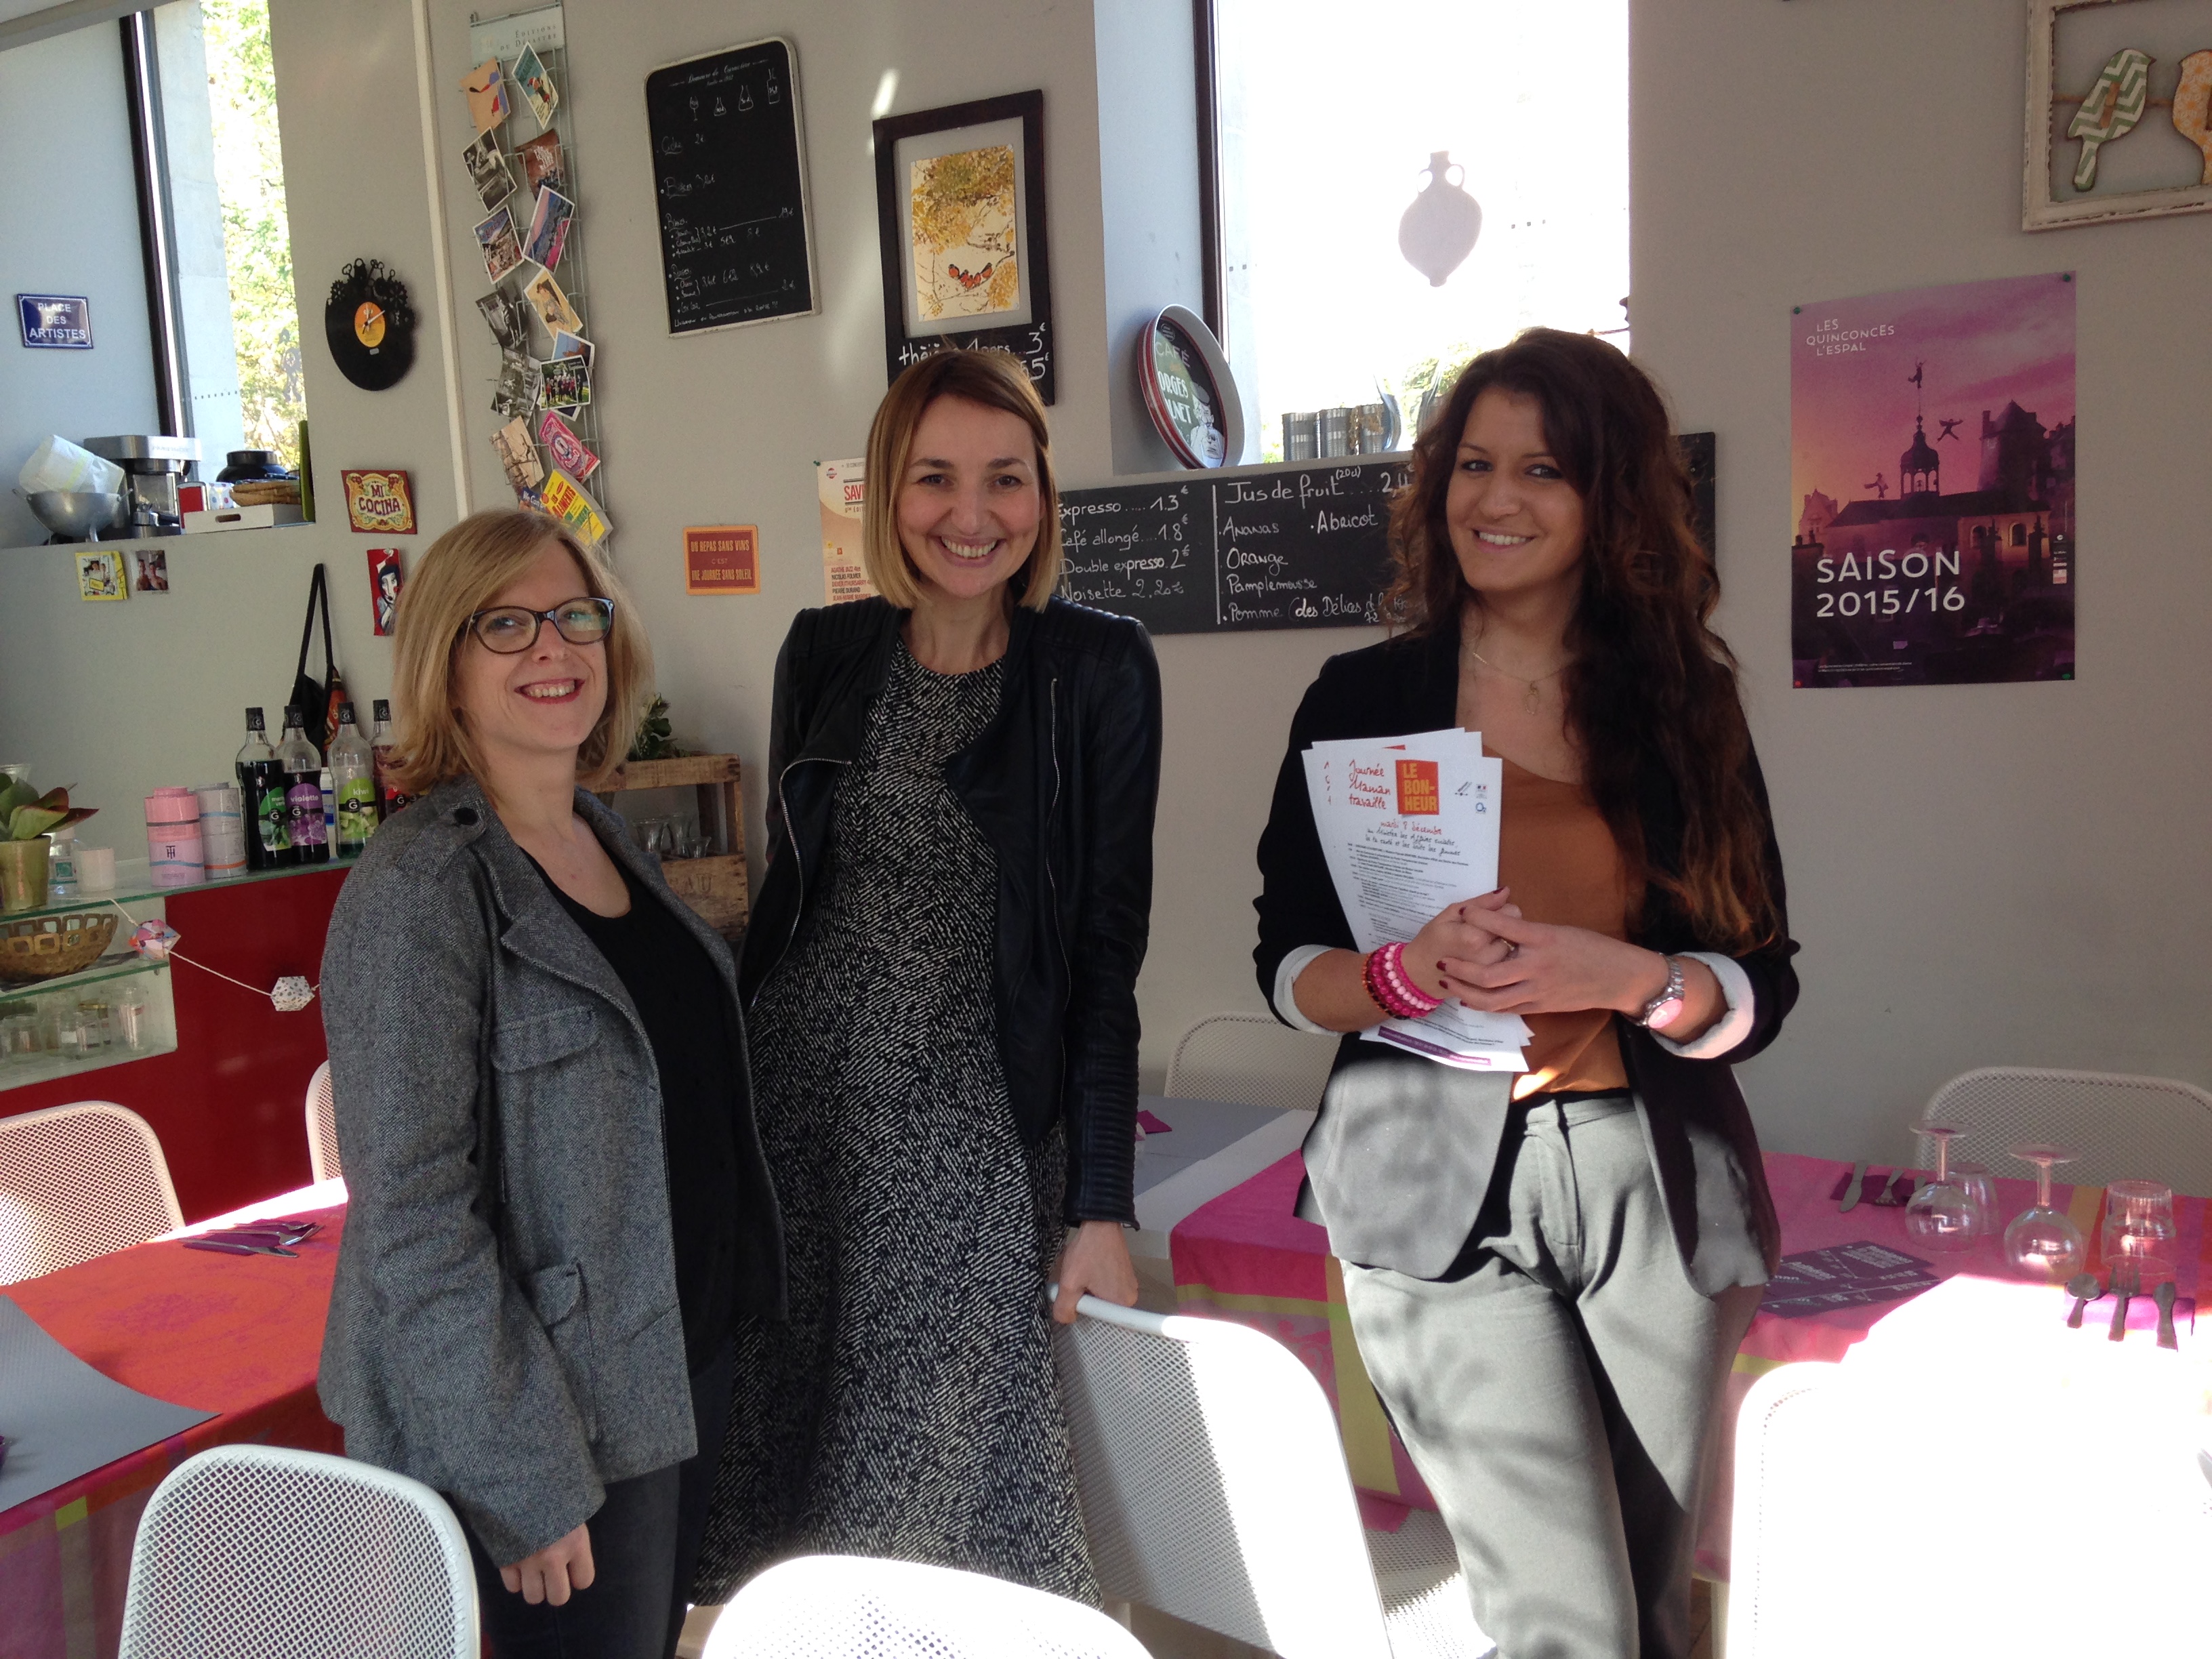 Marlène Schiappa créatrice de "Maman Travaille" avec Géraldine Durant & Marine Vevaux d'O2 lors de la Conférence de Presse Maman Travaille le 15 octobre 2015 au Mans